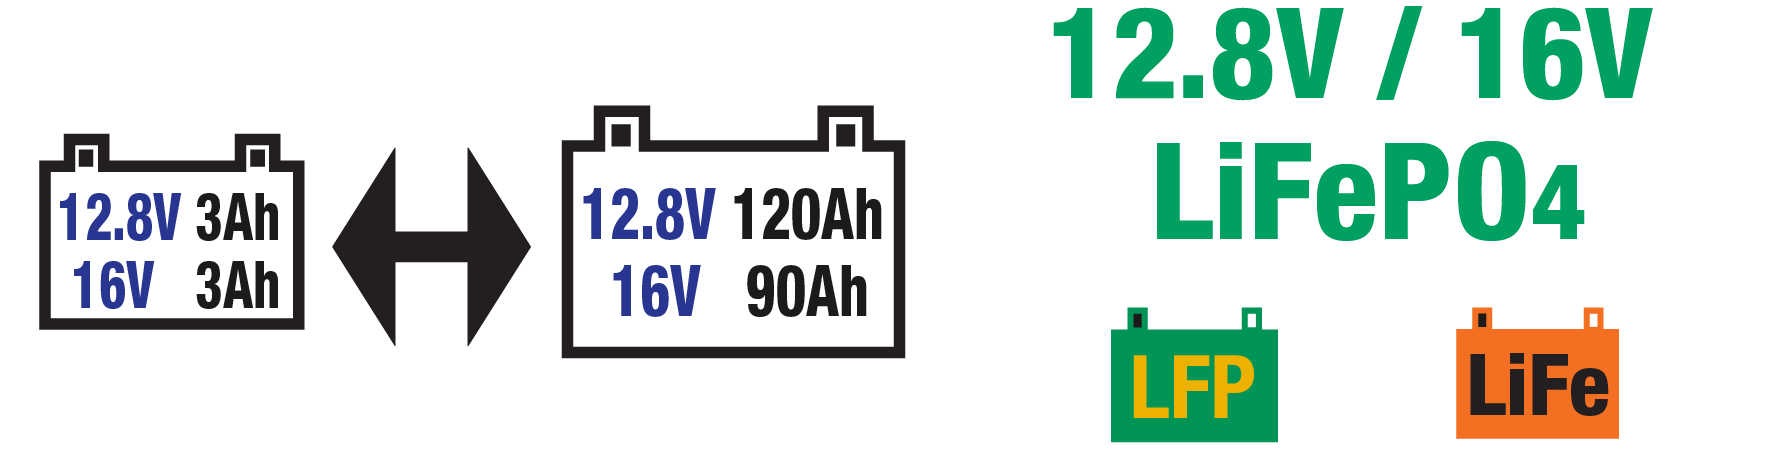 el optimate lithium lfp select es Ideal para baterías LiFeP04 / LFP de 12.8V/16V